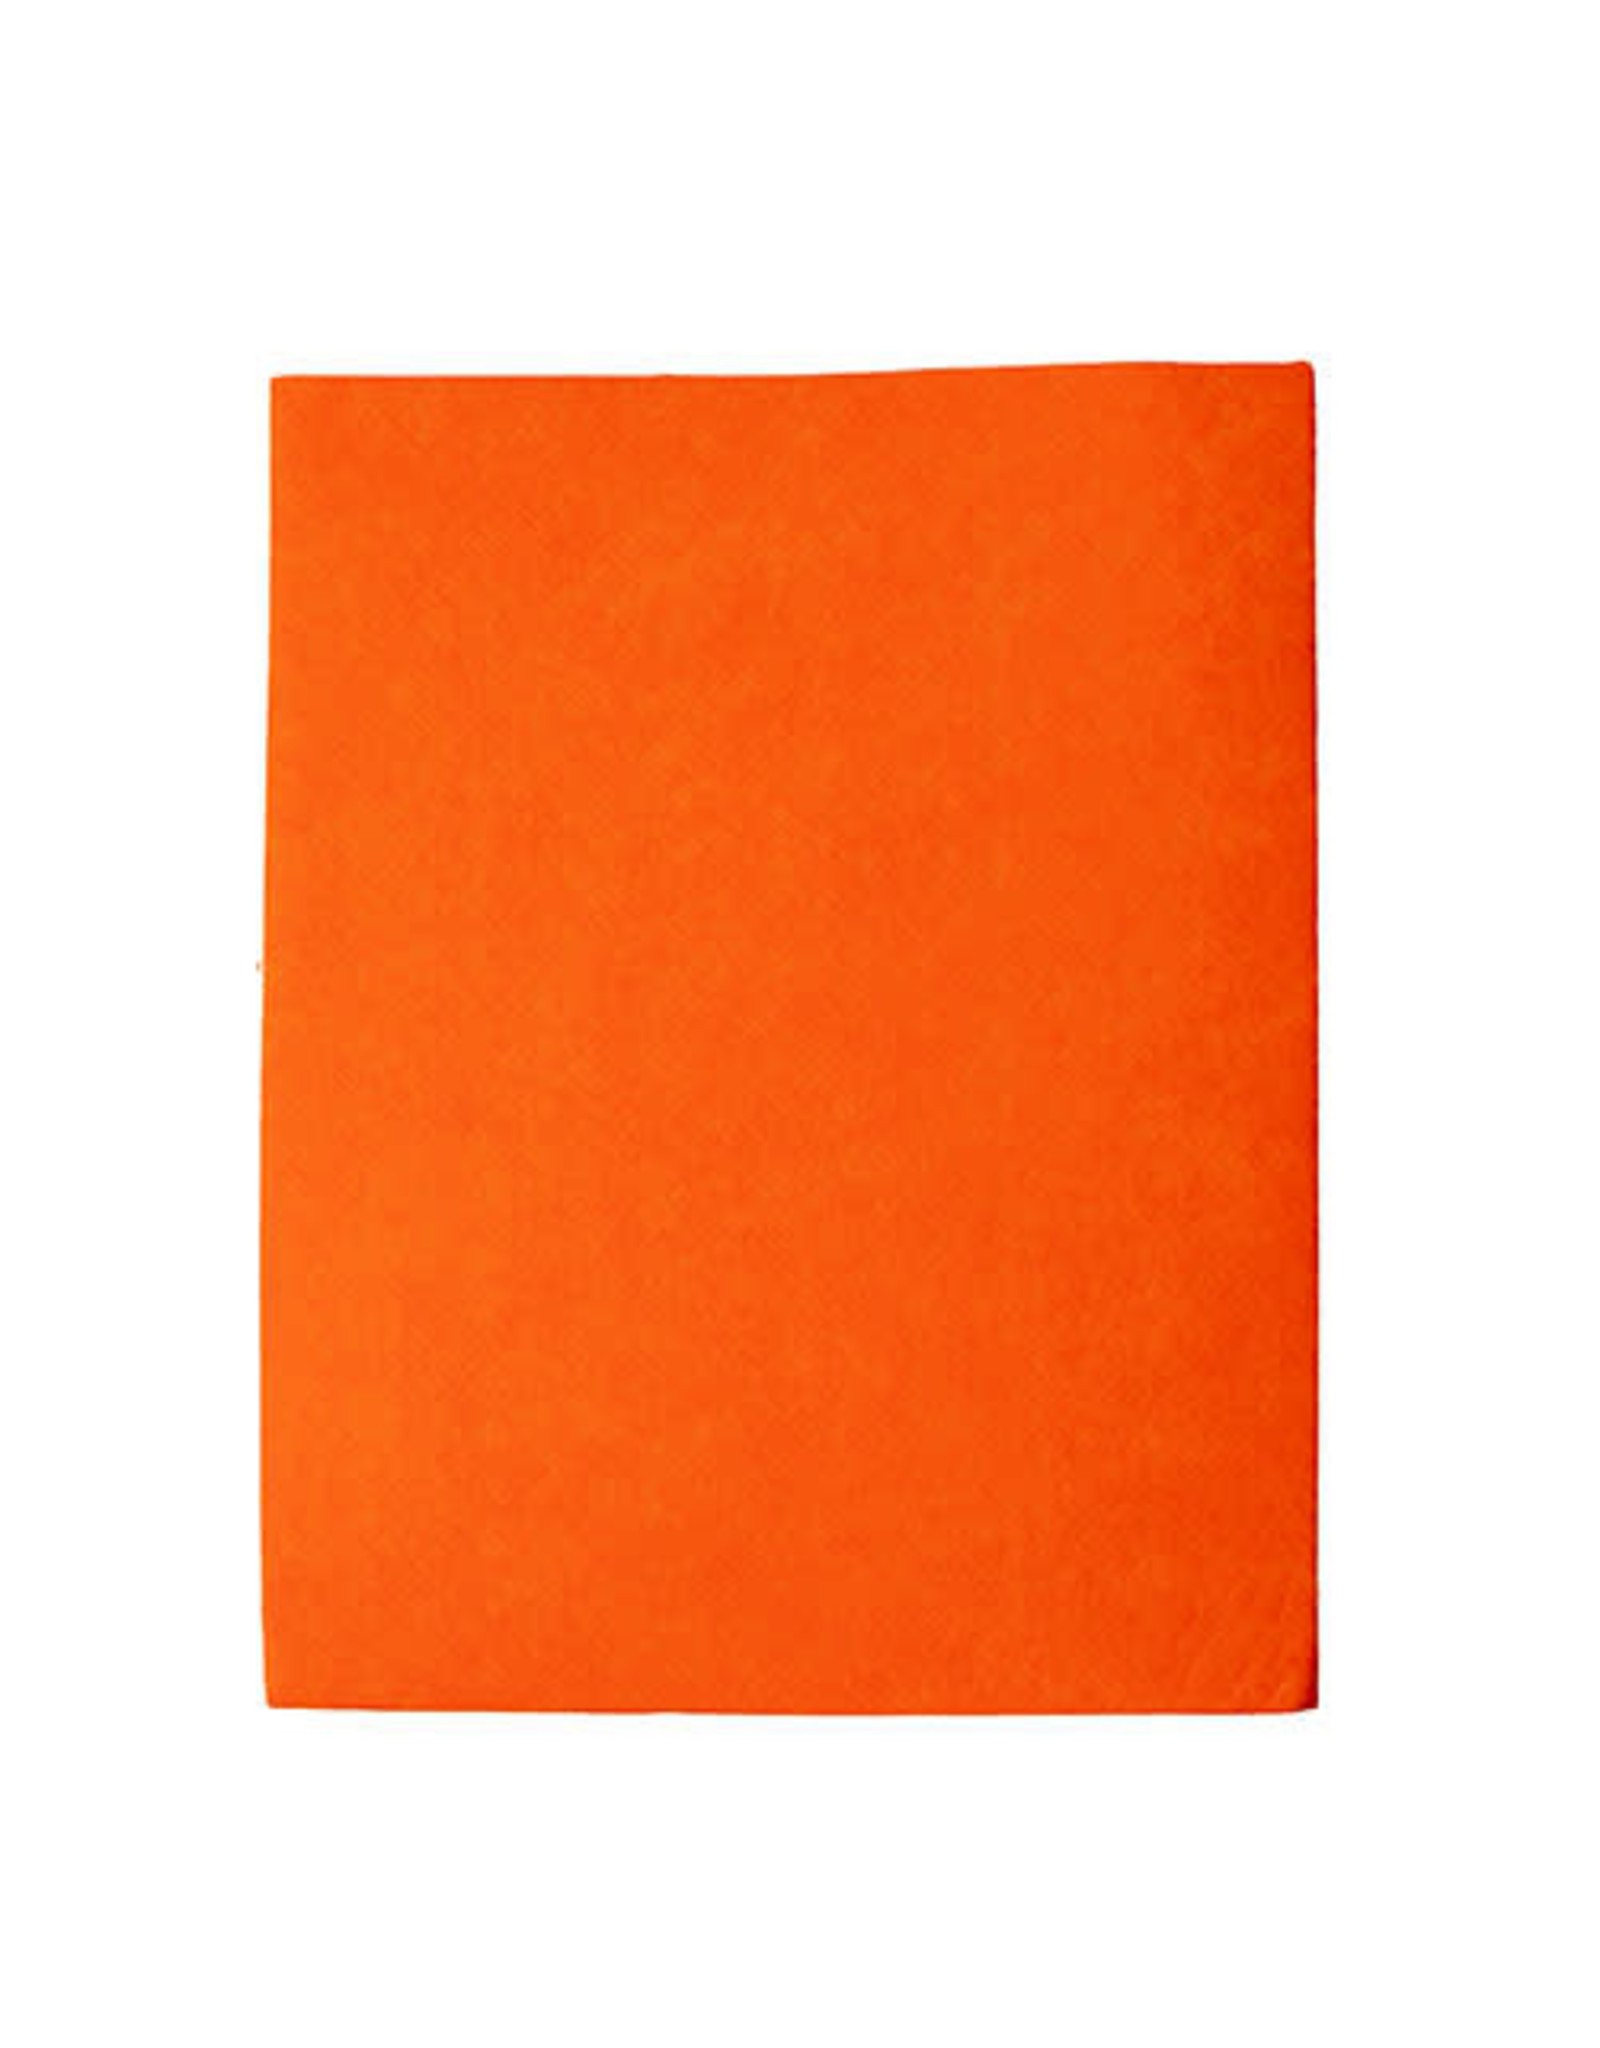 Felt Beading Foundation Orange 1.5mm thick 8.5x11” Sheet